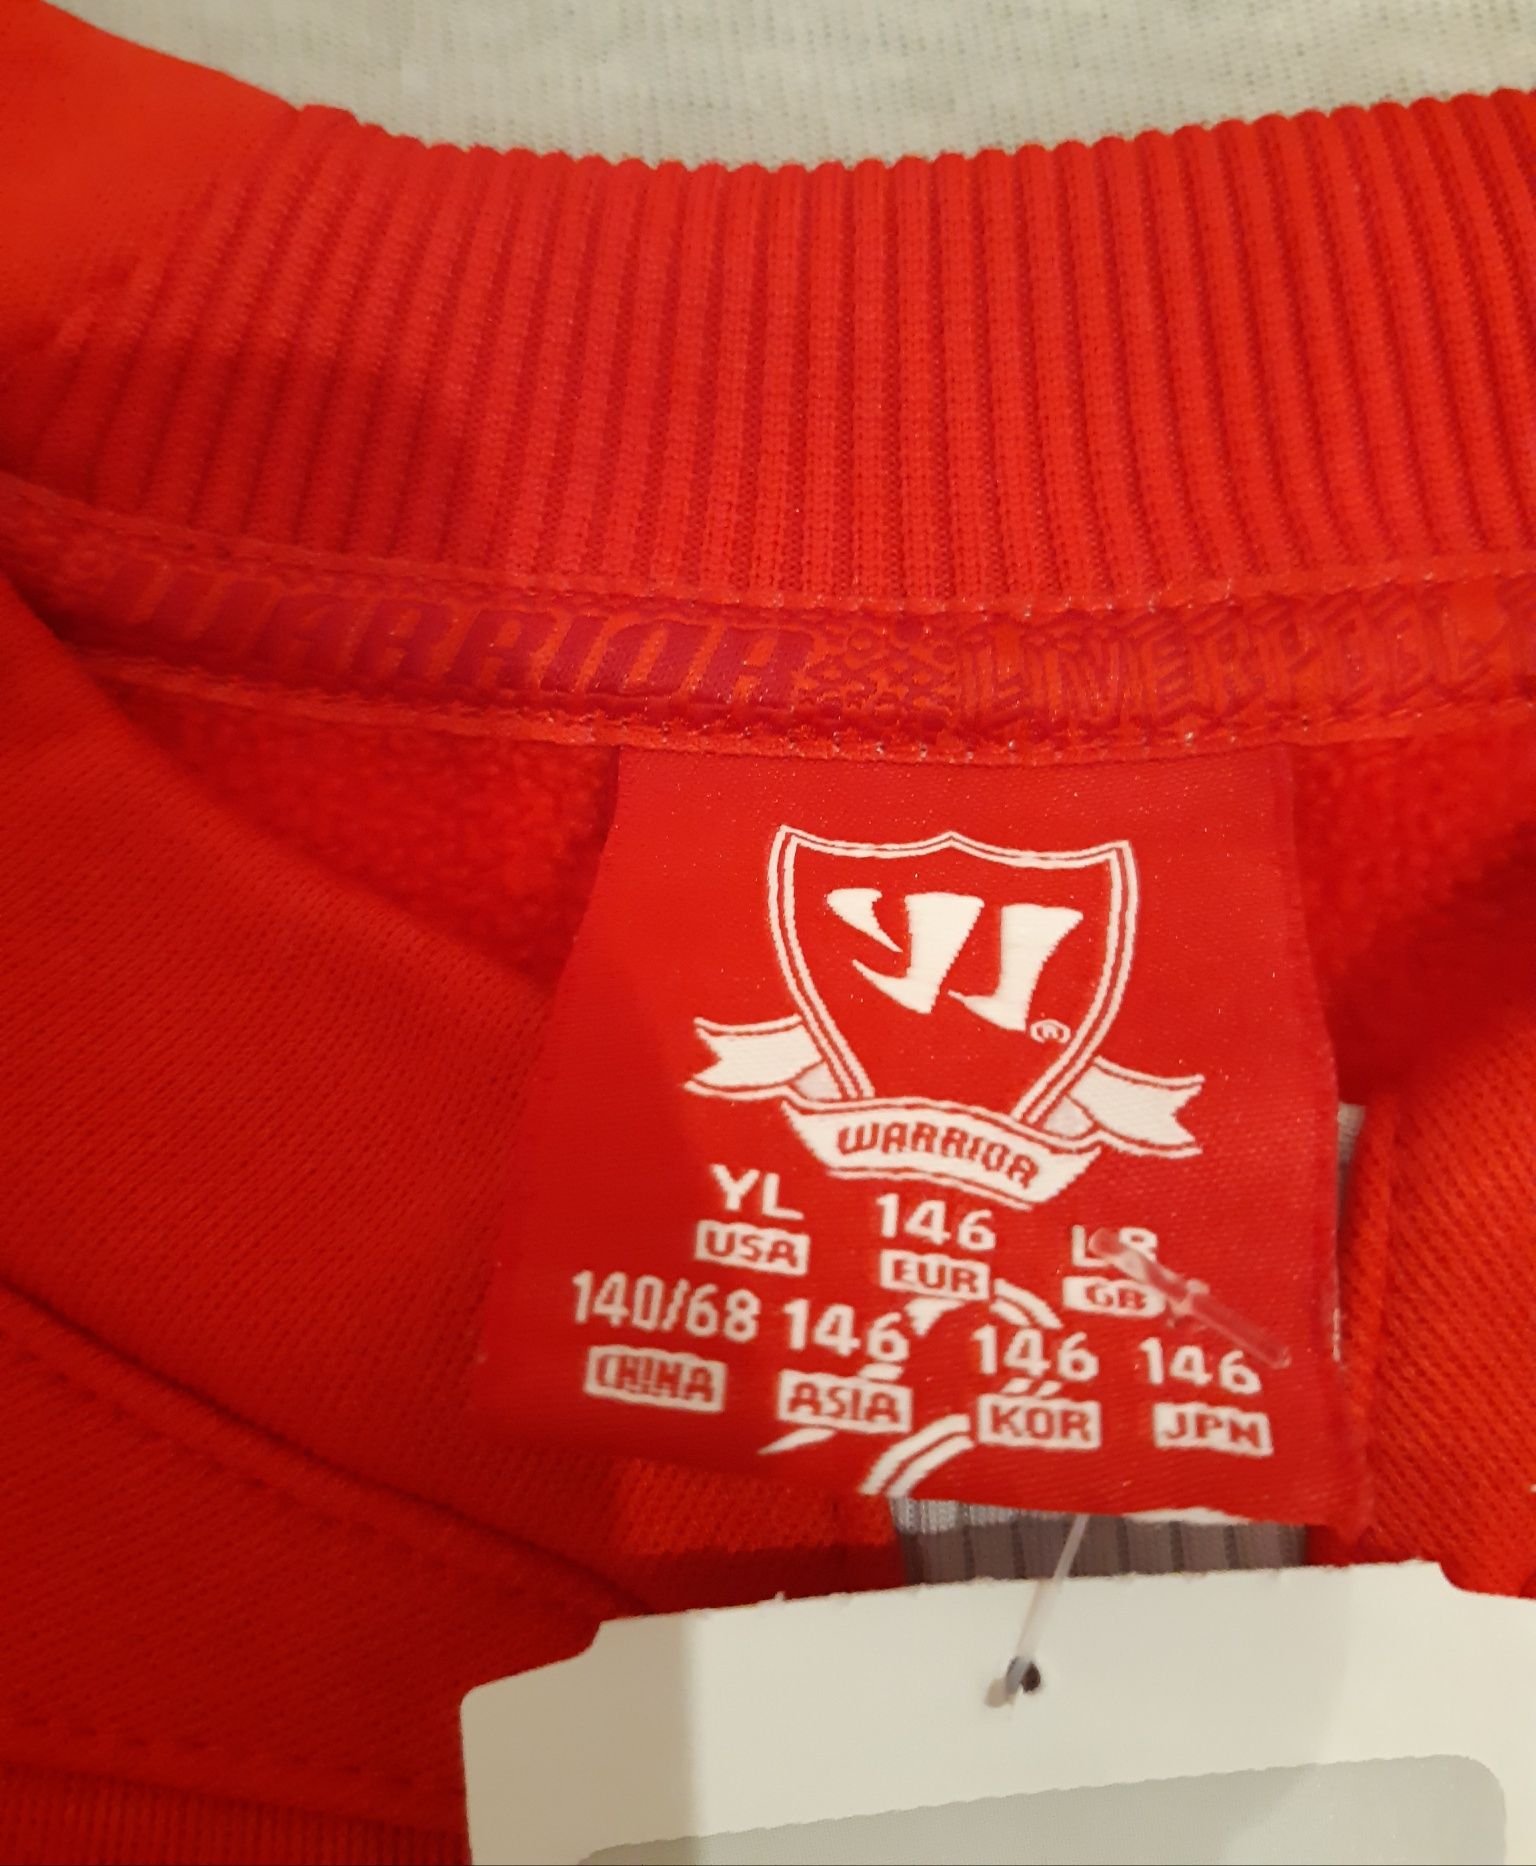 Nowa bluza Liverpool FC Warrior rozmiar 146